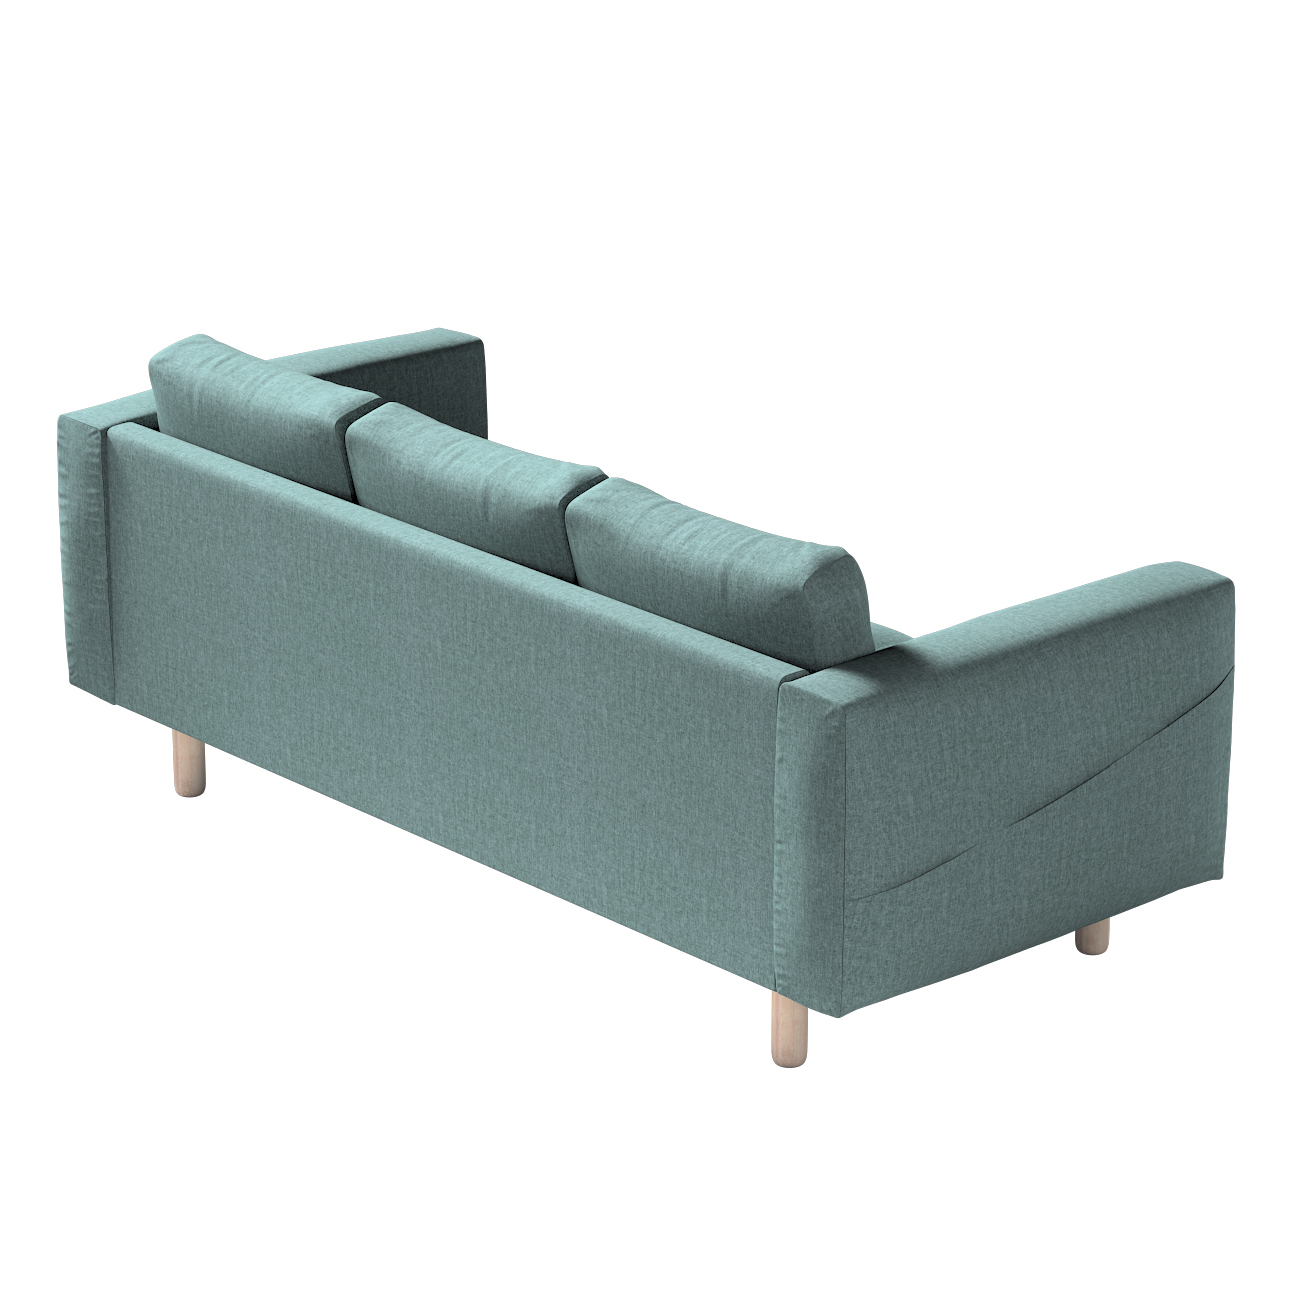 Bezug für Norsborg 3-Sitzer Sofa, grau- blau, Norsborg 3-Sitzer Sofabezug, günstig online kaufen